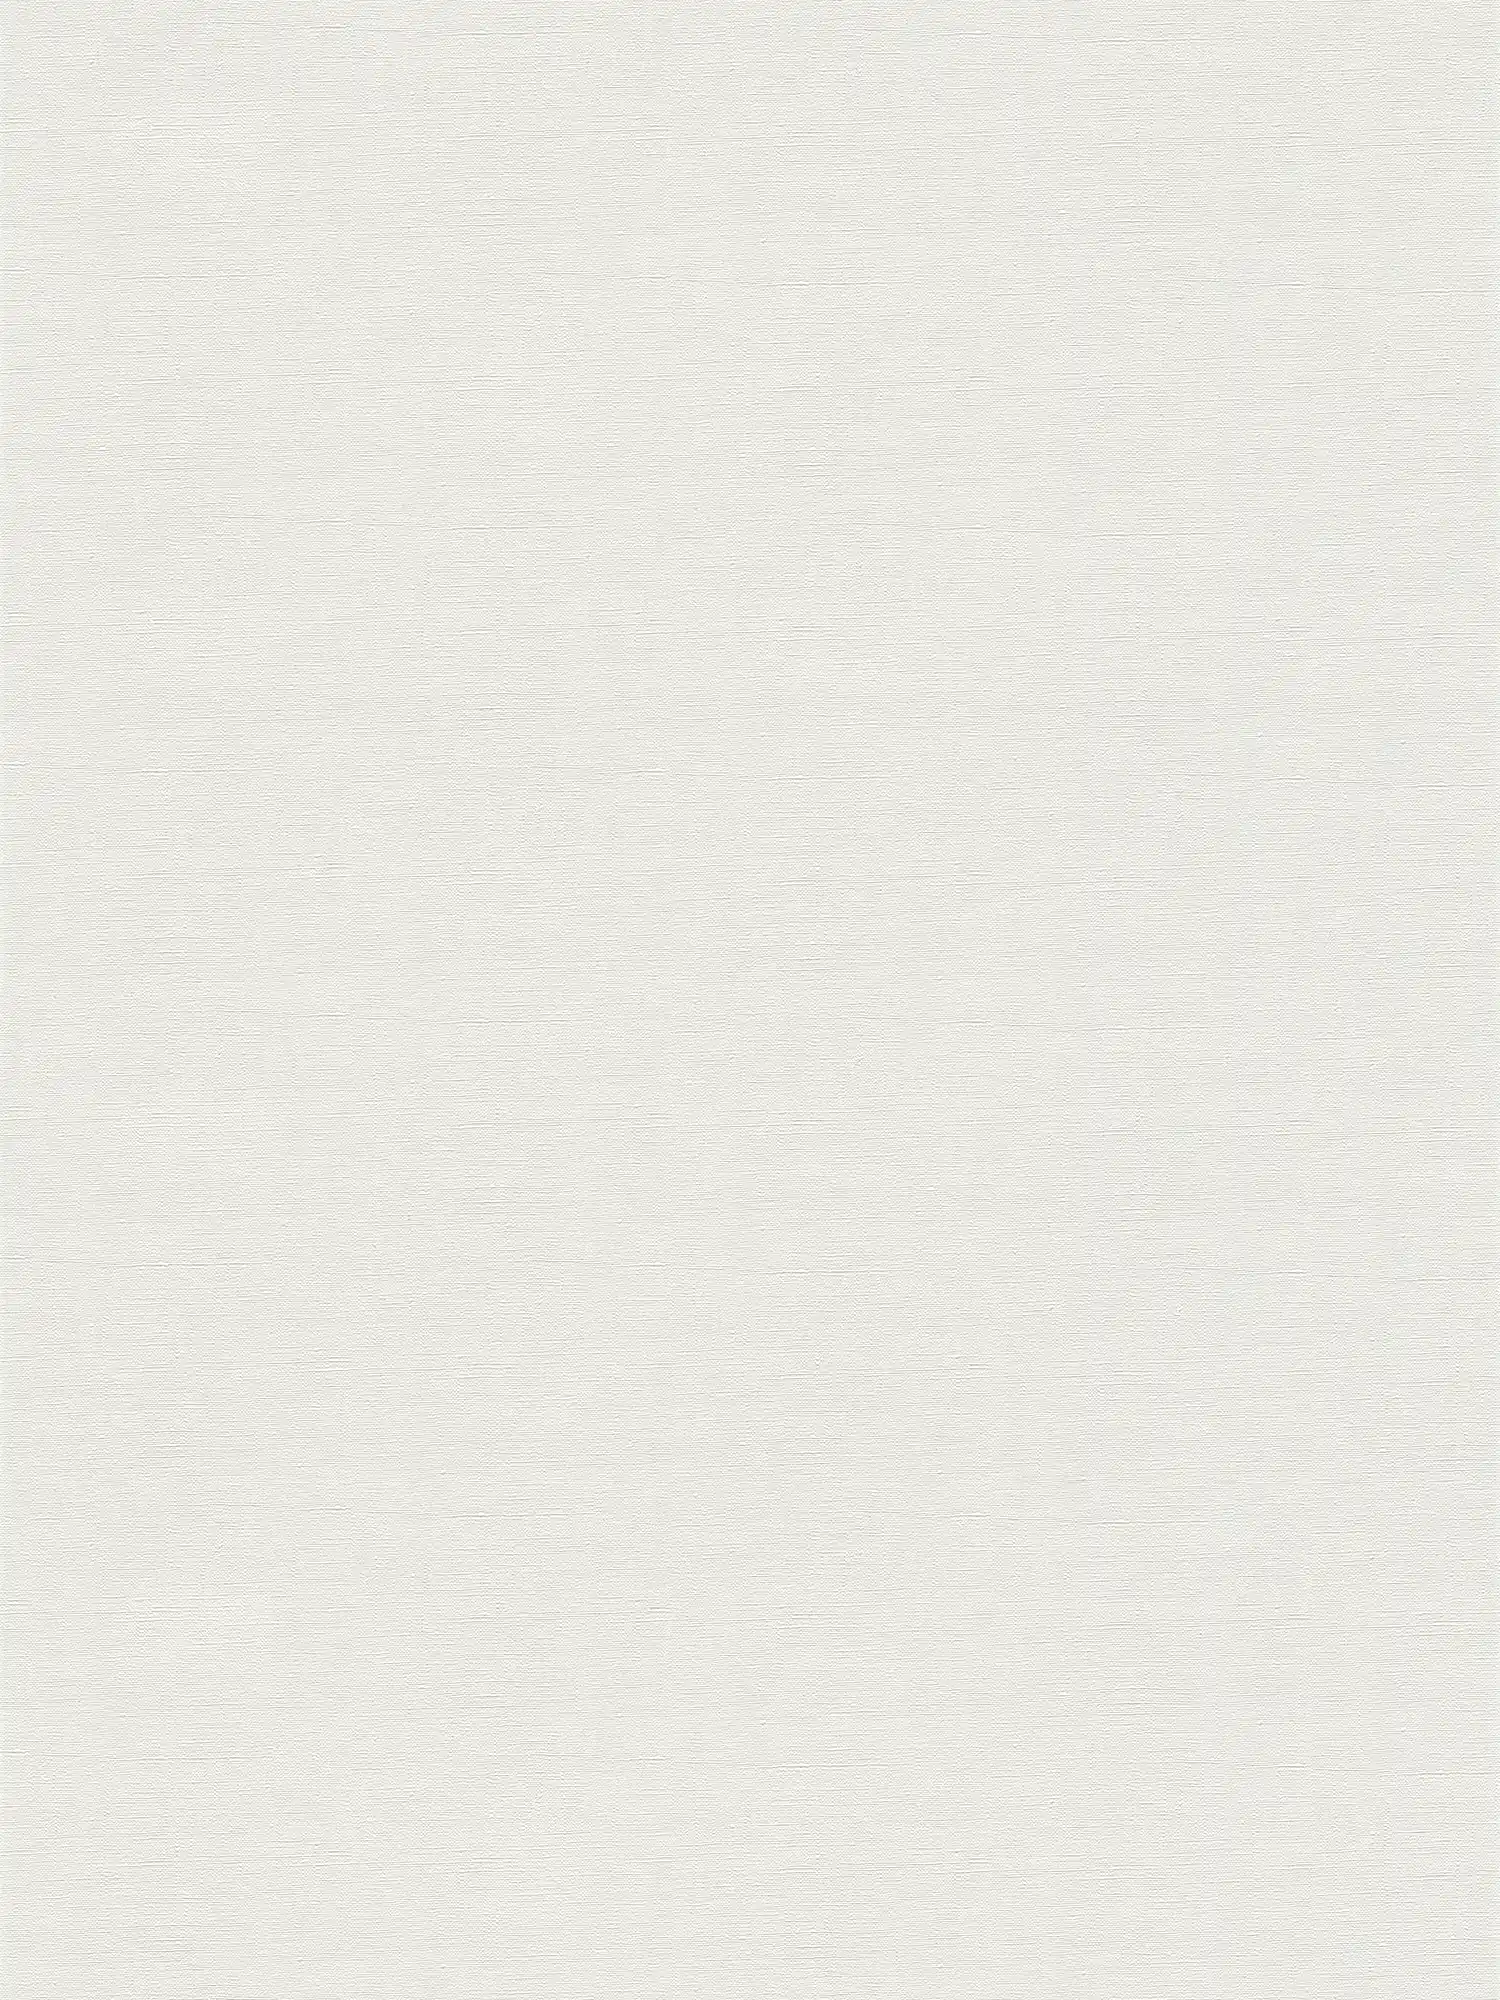 Plain wallpaper with a light textured look - cream, light grey
